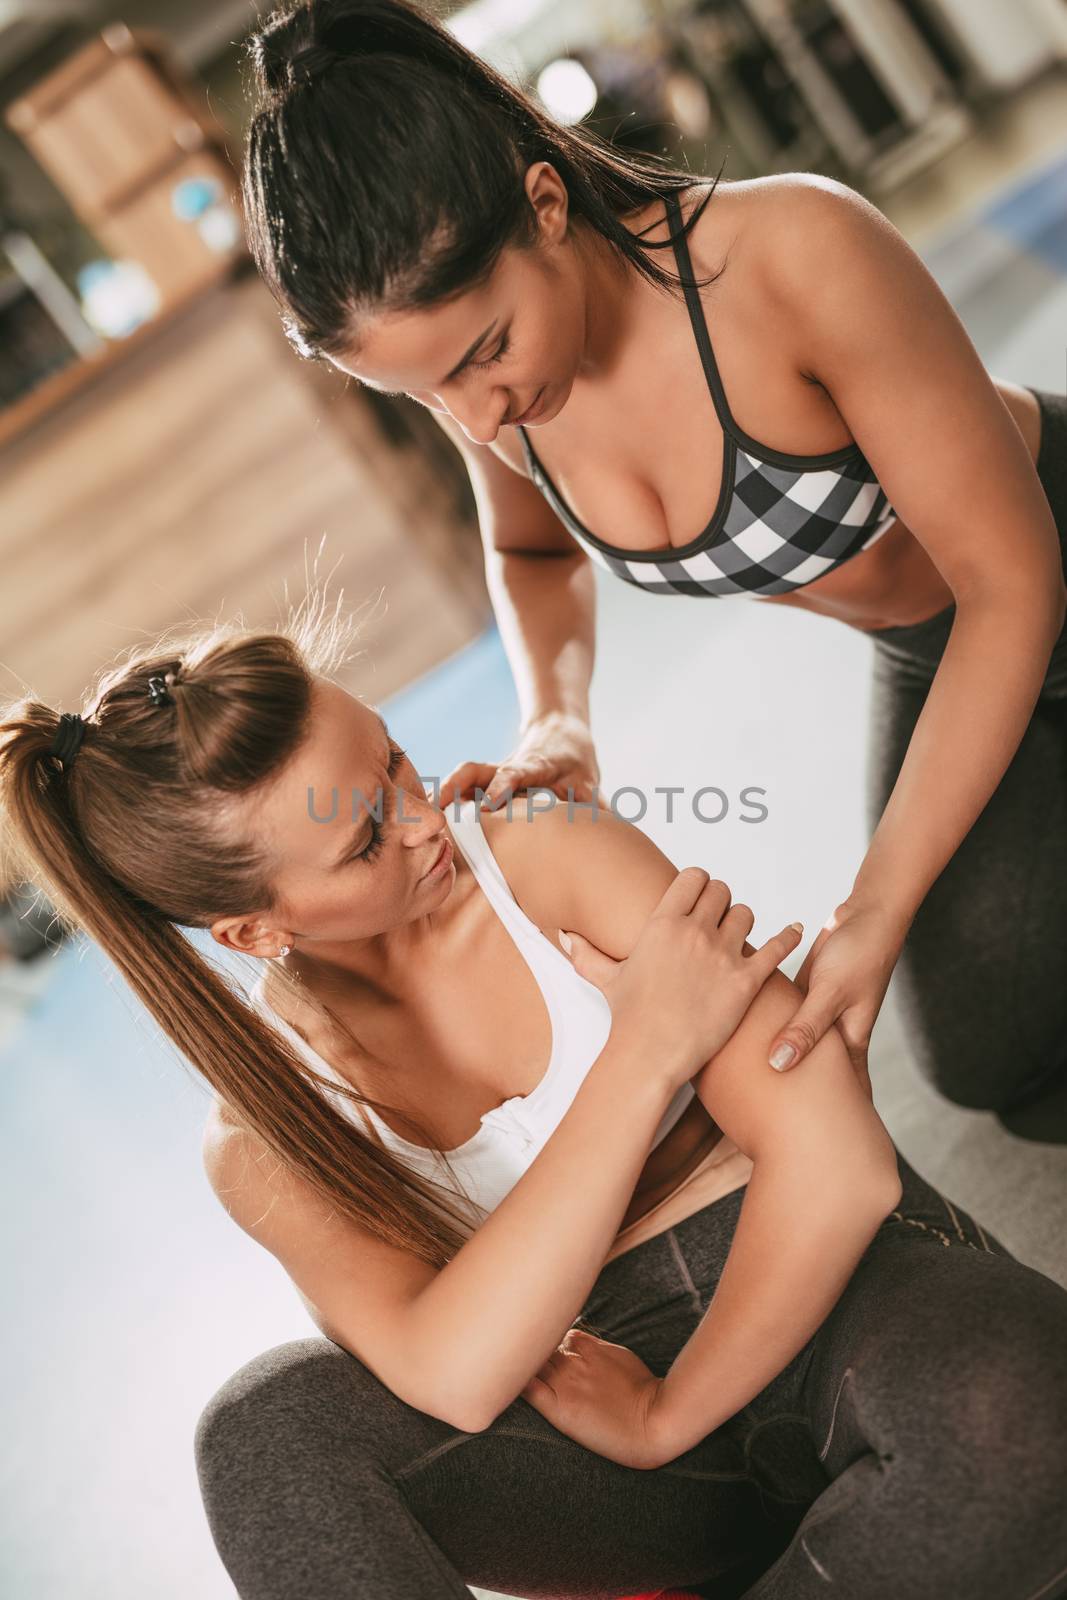 Injured Girl At The Gym by MilanMarkovic78